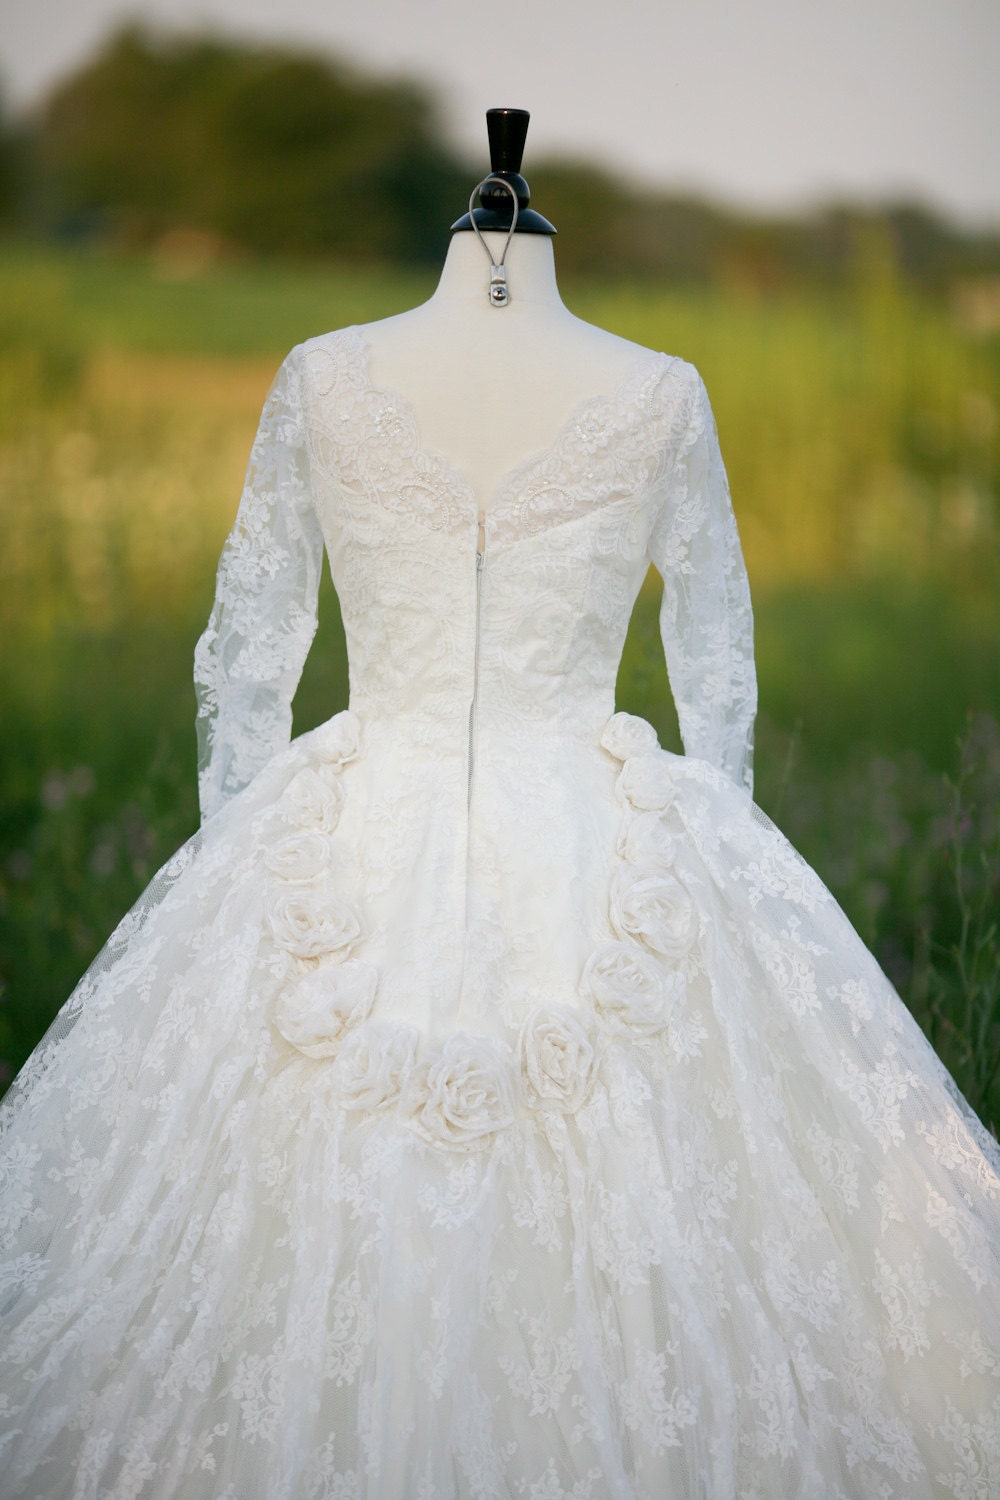 SALE Vintage 50's Wedding Dress MAD MEN or Princess Kate